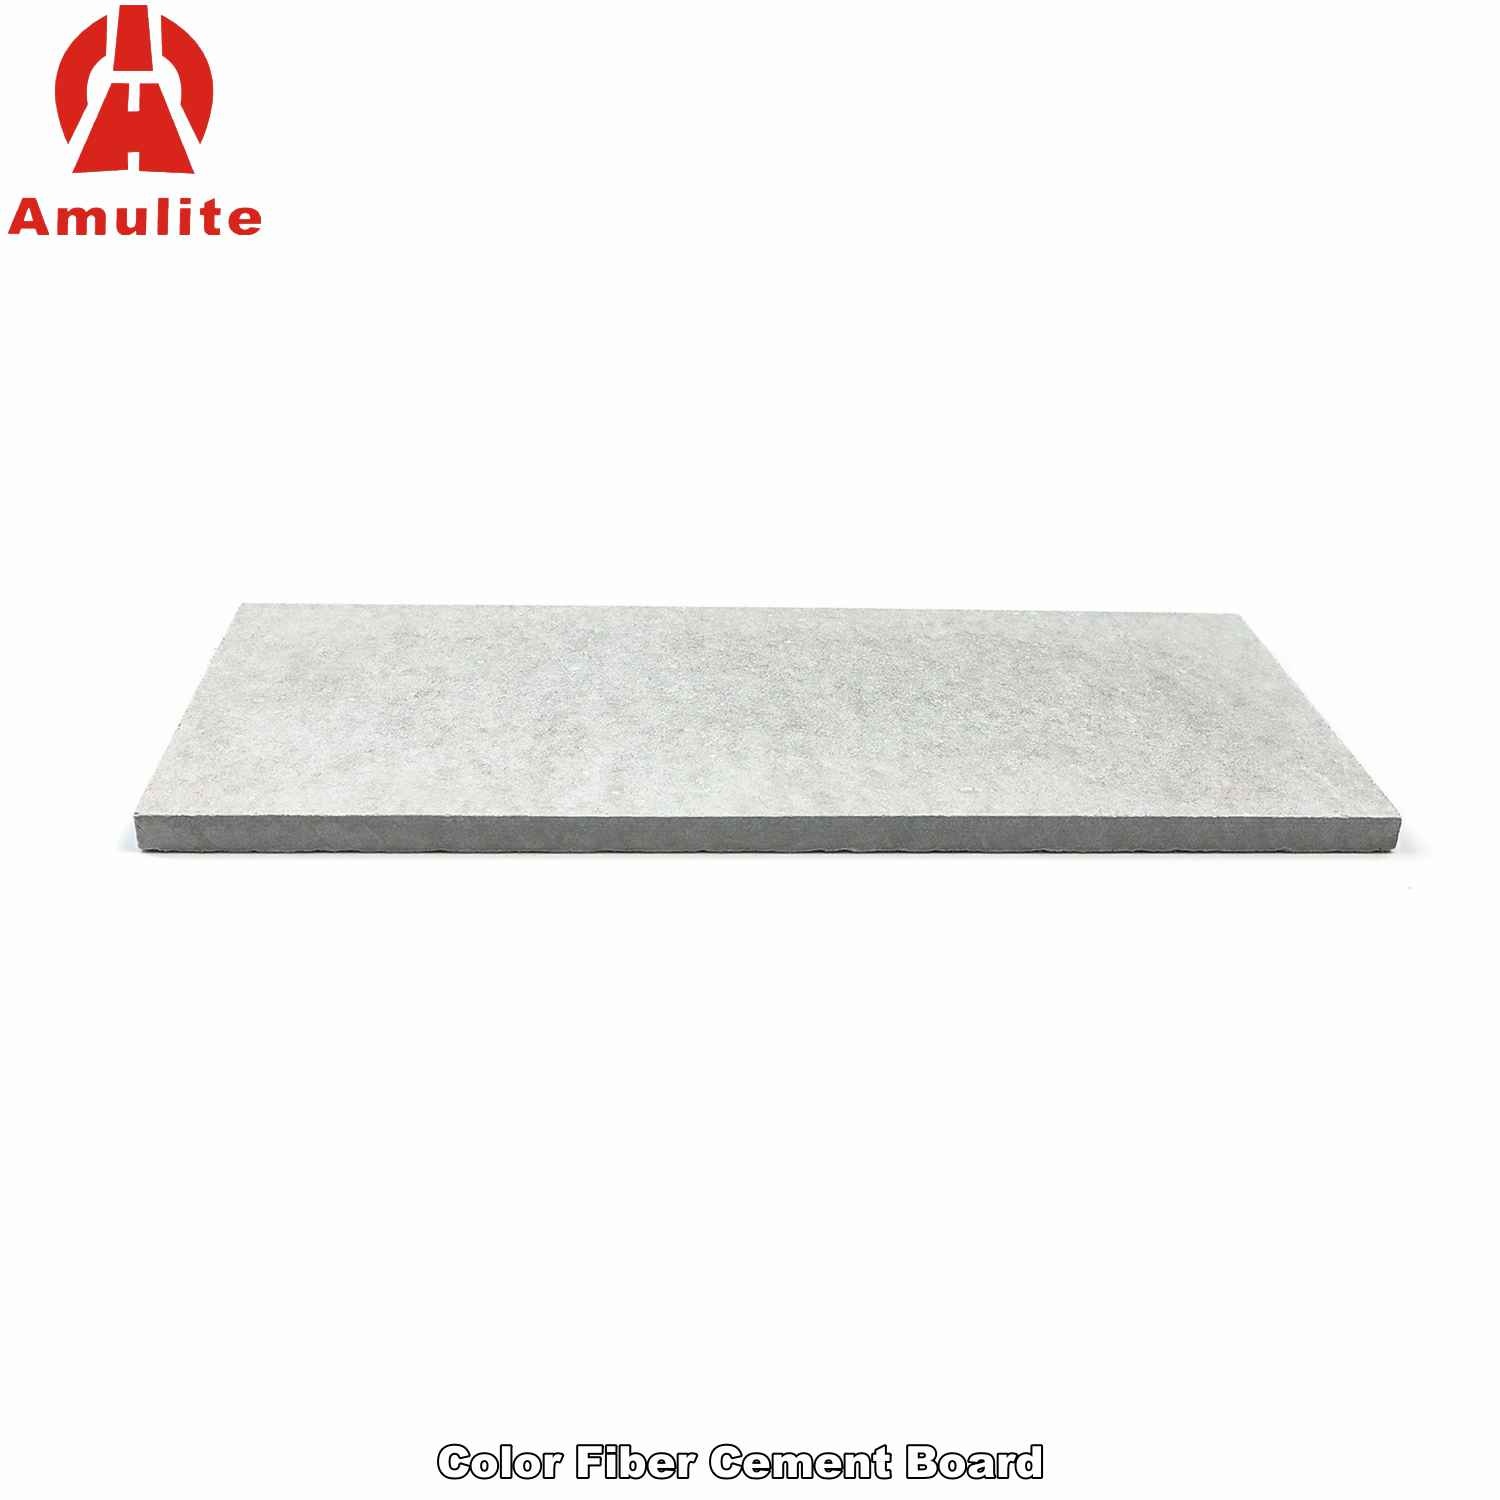 Color Fiber Cement Board (15)